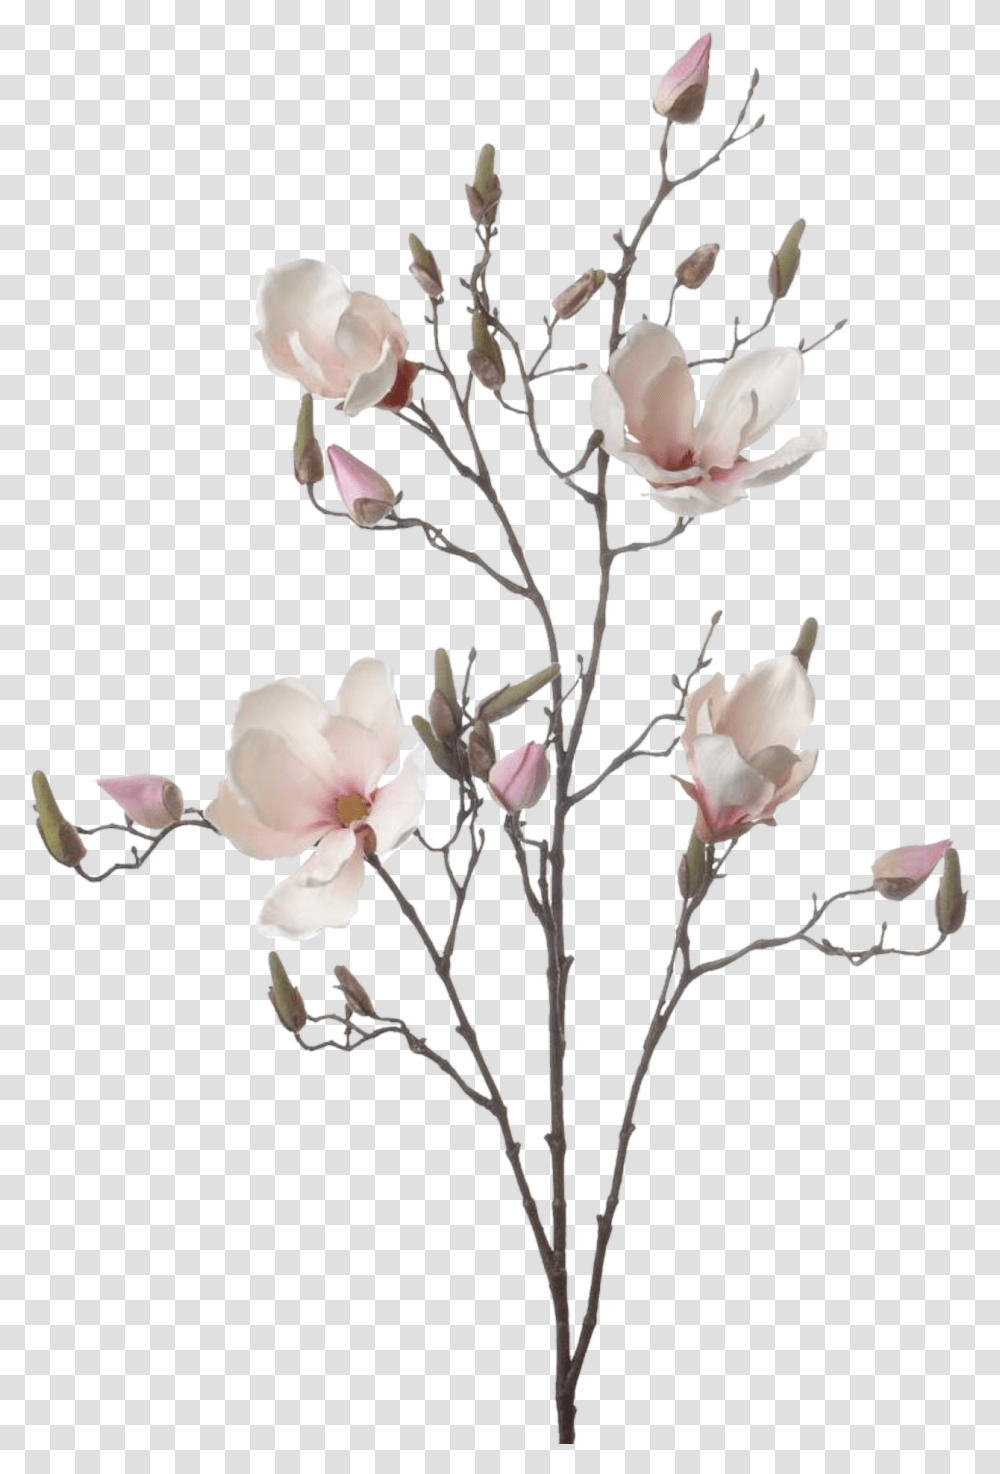 Magnolia Branch, Plant, Flower, Blossom, Vase Transparent Png